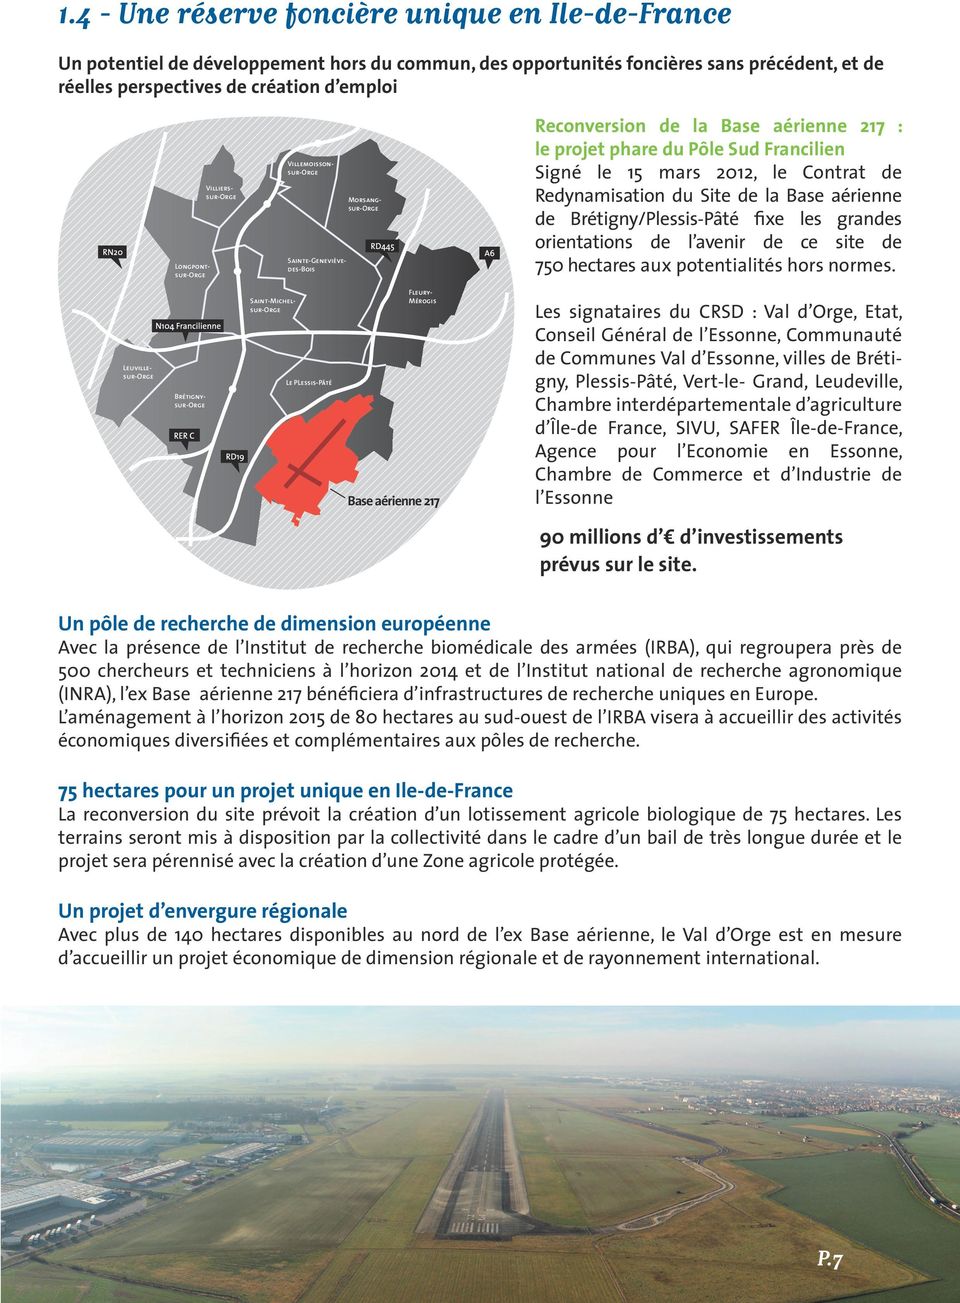 Contrat de Redynamisation du Site de la Base aérienne de Brétigny/Plessis-Pâté fixe les grandes orientations de l avenir de ce site de 750 hectares aux potentialités hors normes.